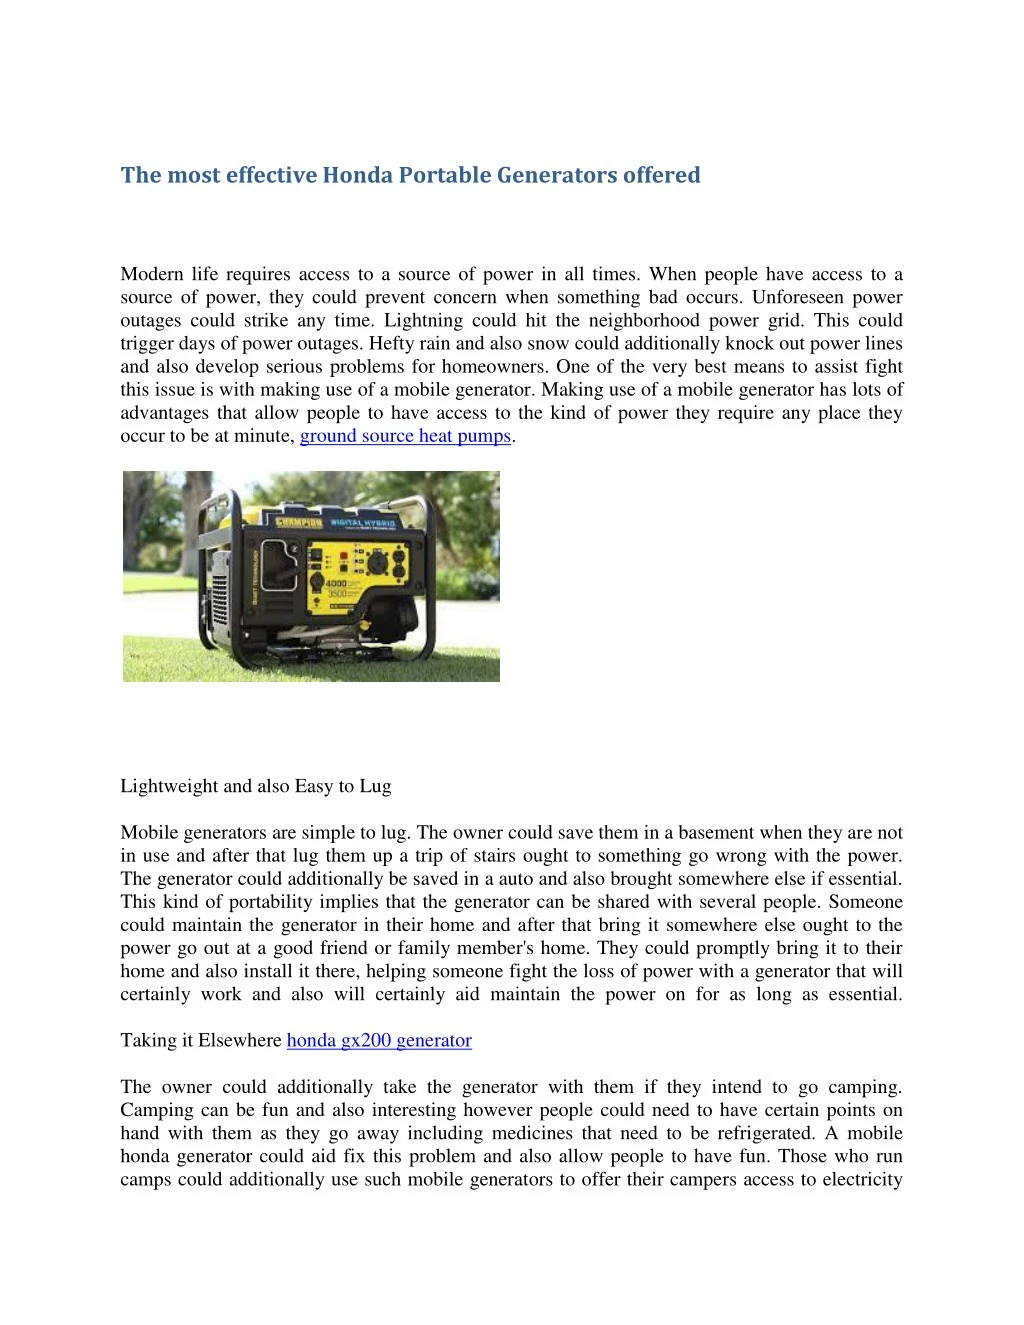 the most effective honda portable generators